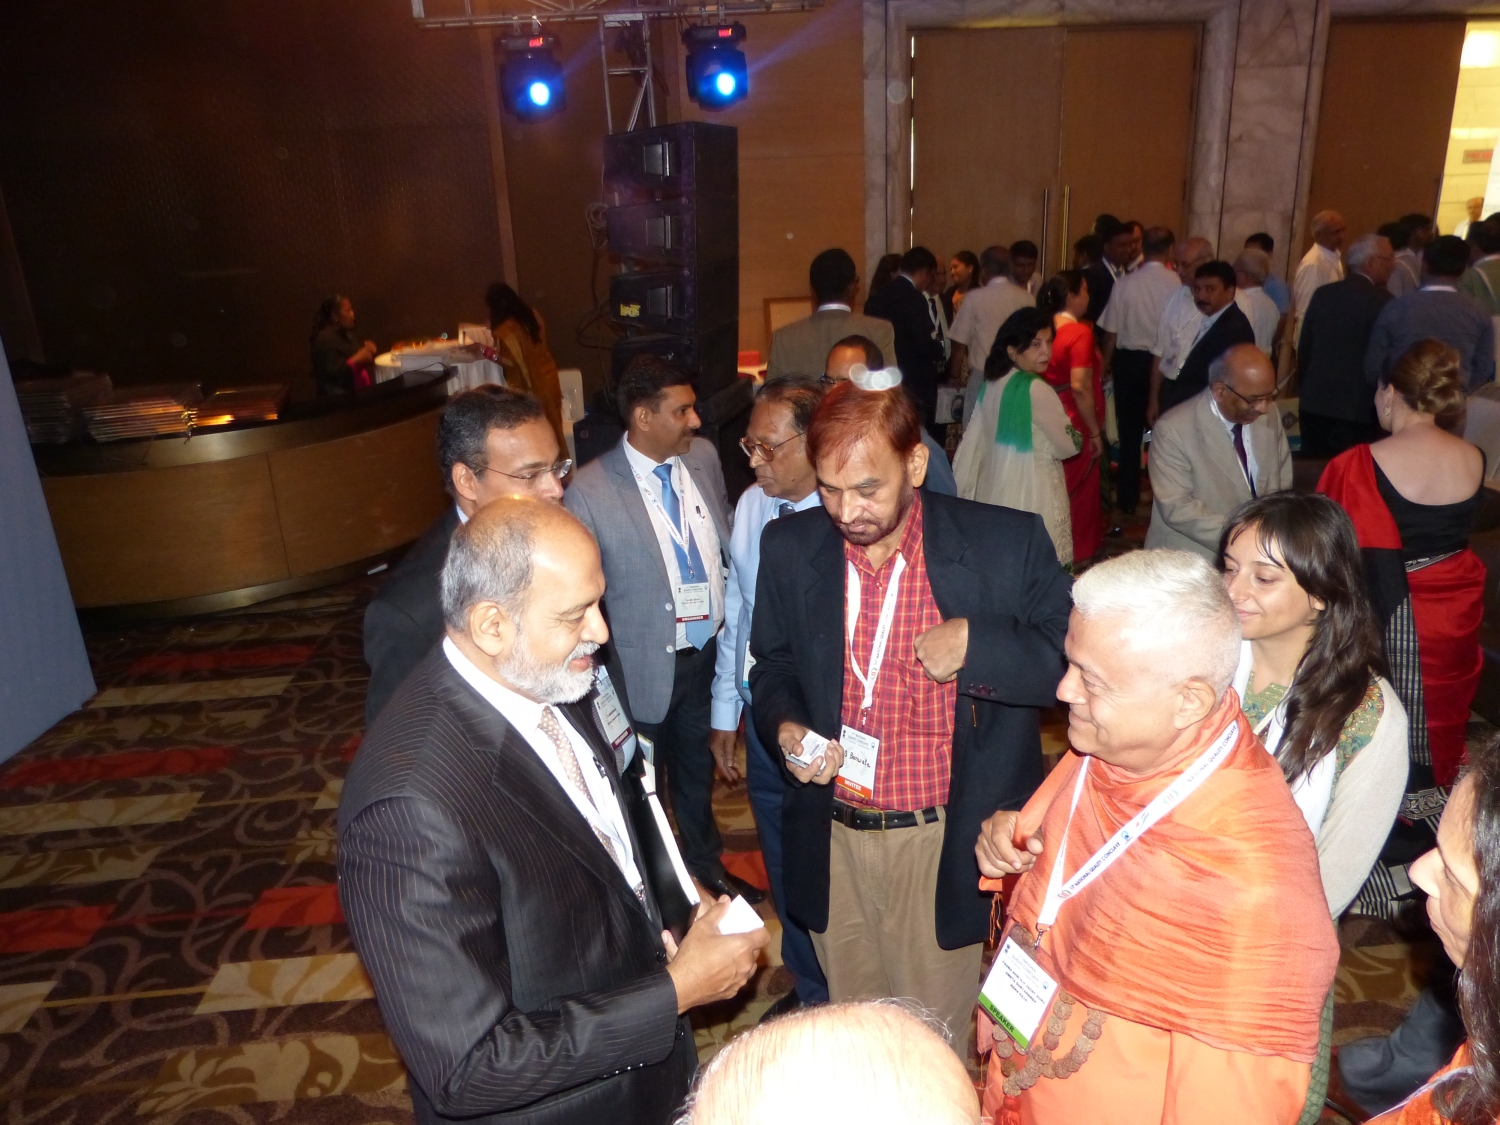 H.H. Jagat Guru Amrta Súryánanda Mahá Rája and Adil Zainulbhai, Chairman of the Quality Council of India